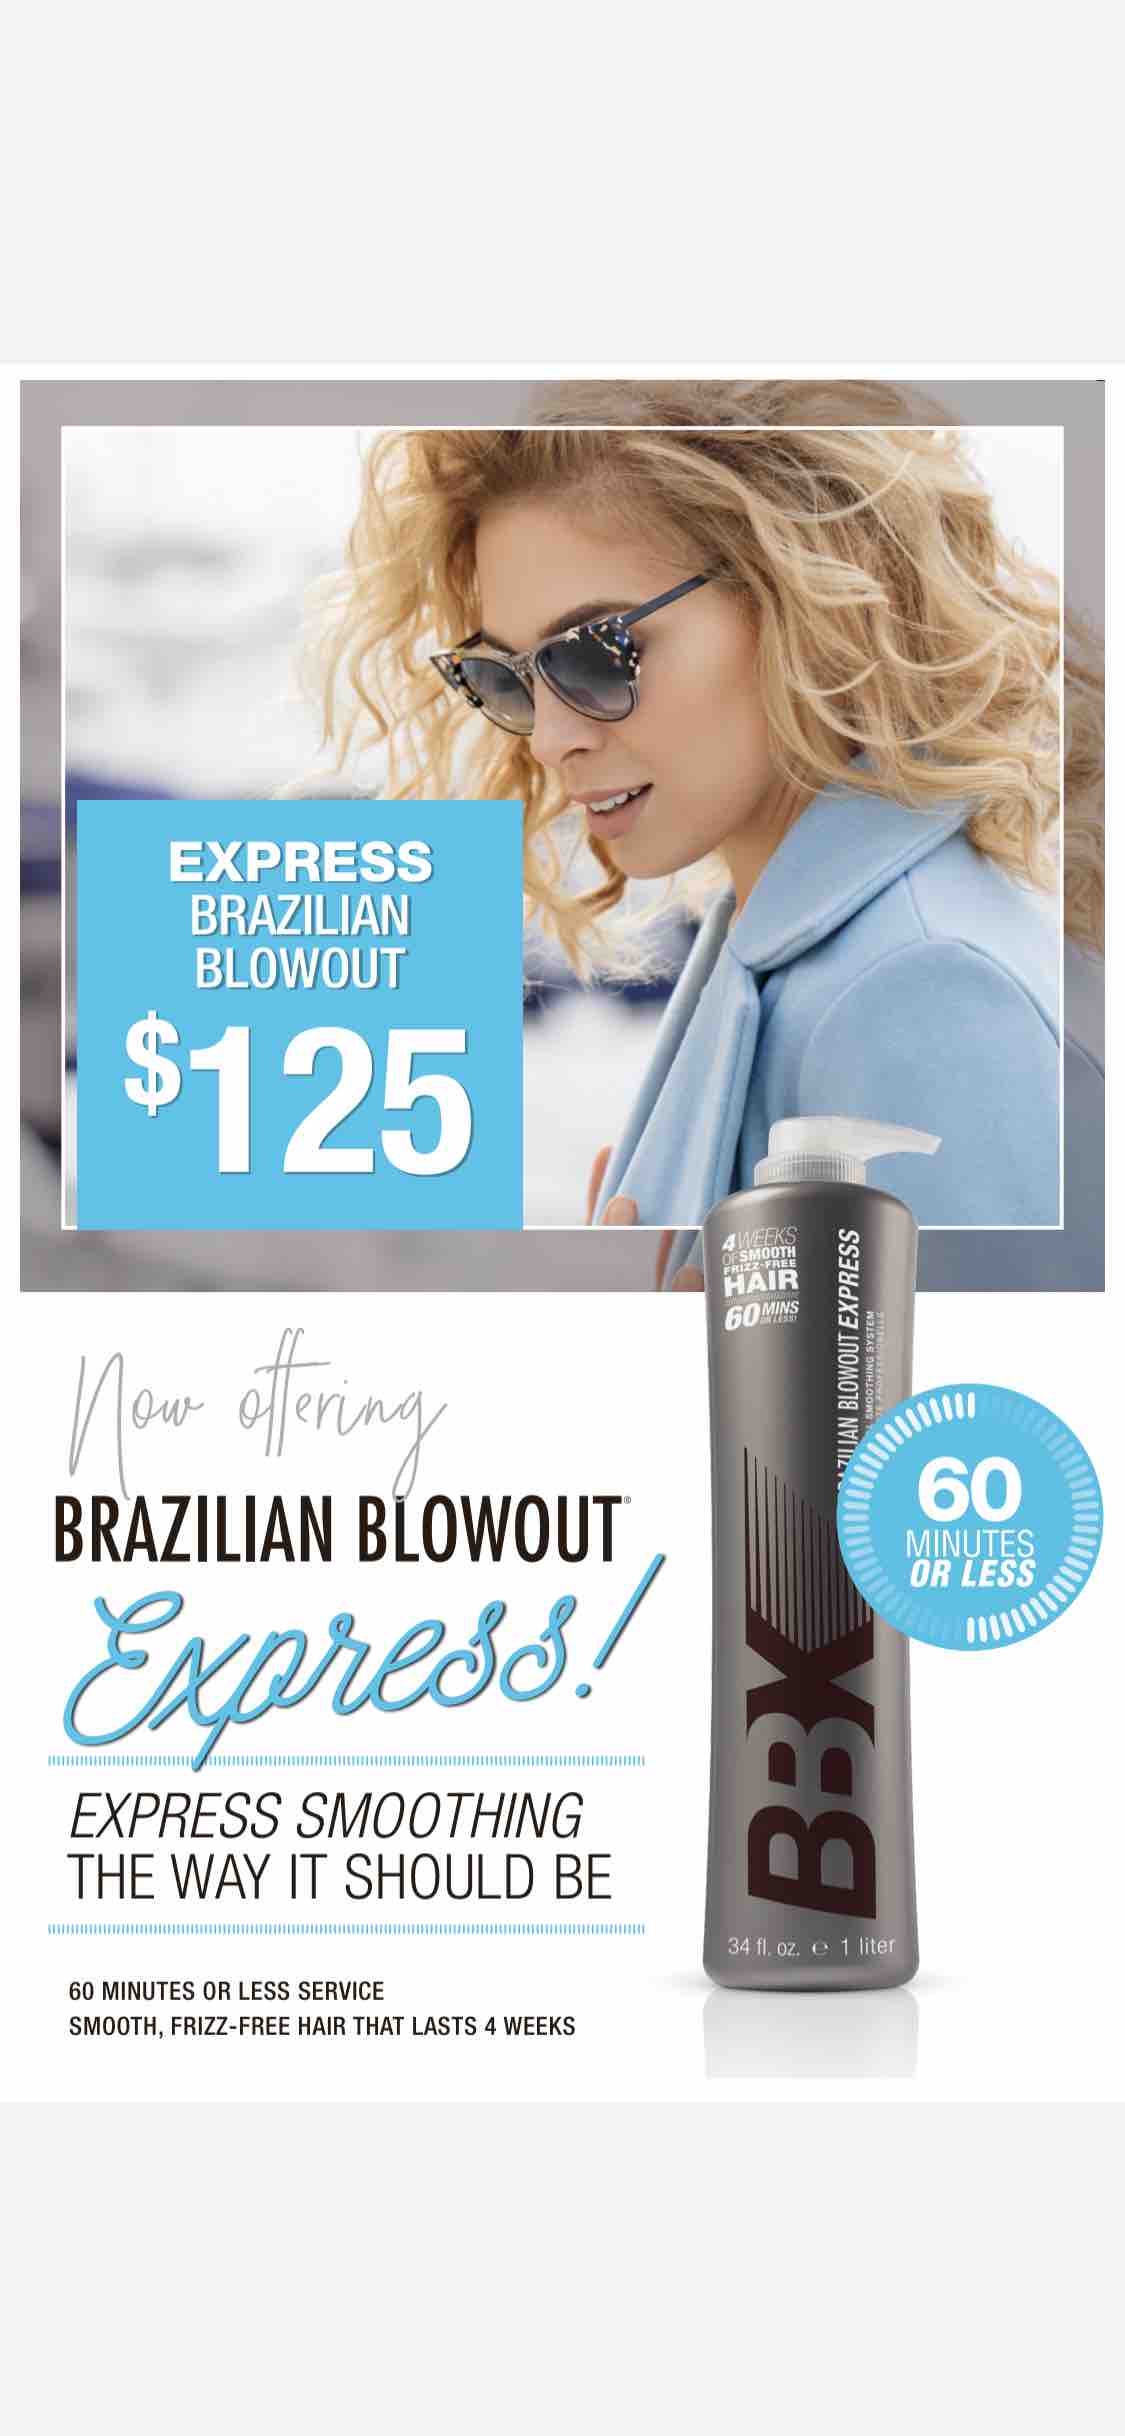 Brazilian Blowout Express